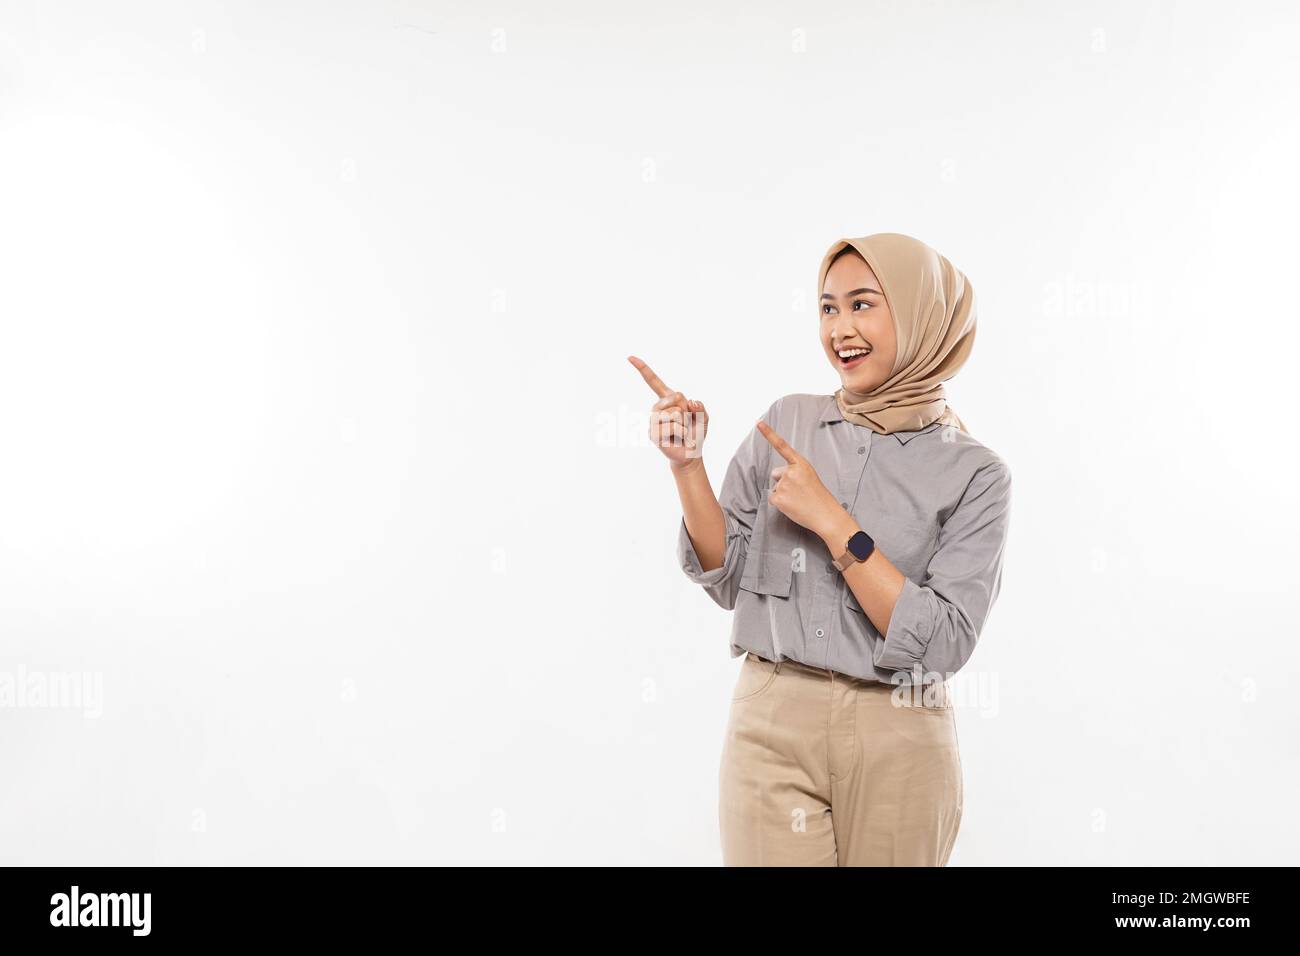 femme avec hijab pointant avec enthousiasme sur l'espace vide à ses côtés Banque D'Images